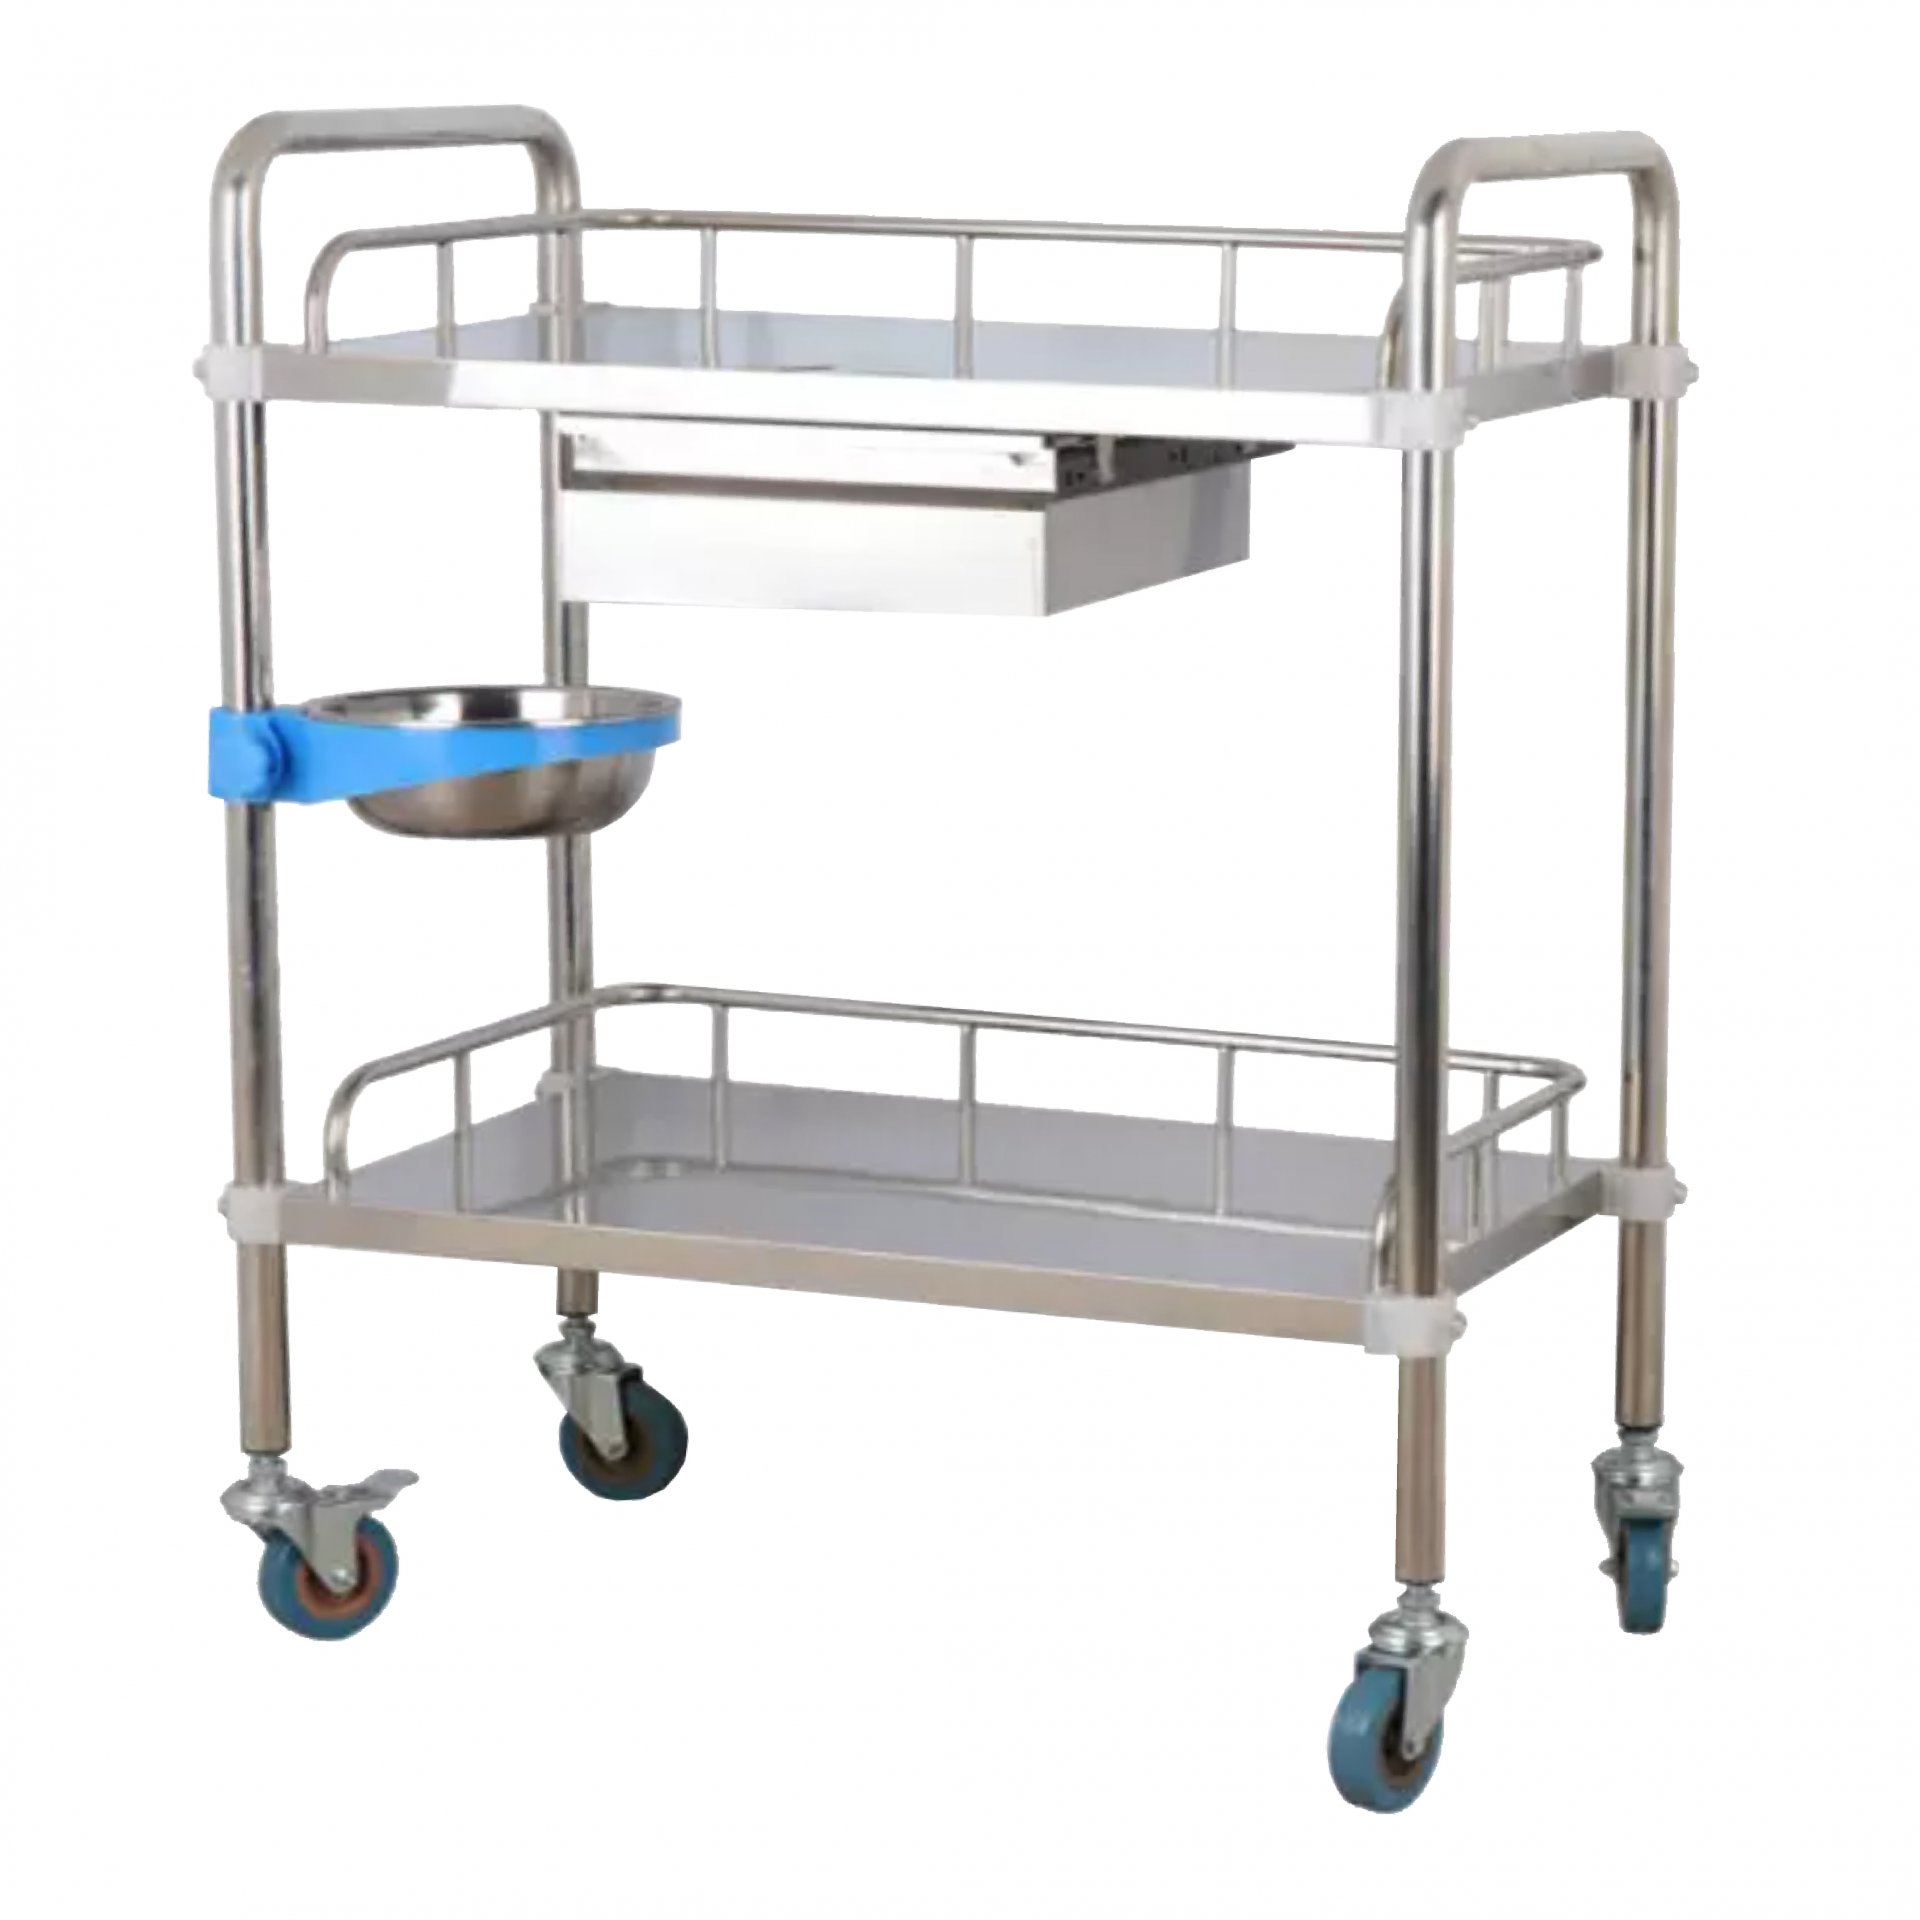 Medical trolley cart : LH-B07 | 1 Year Warranty